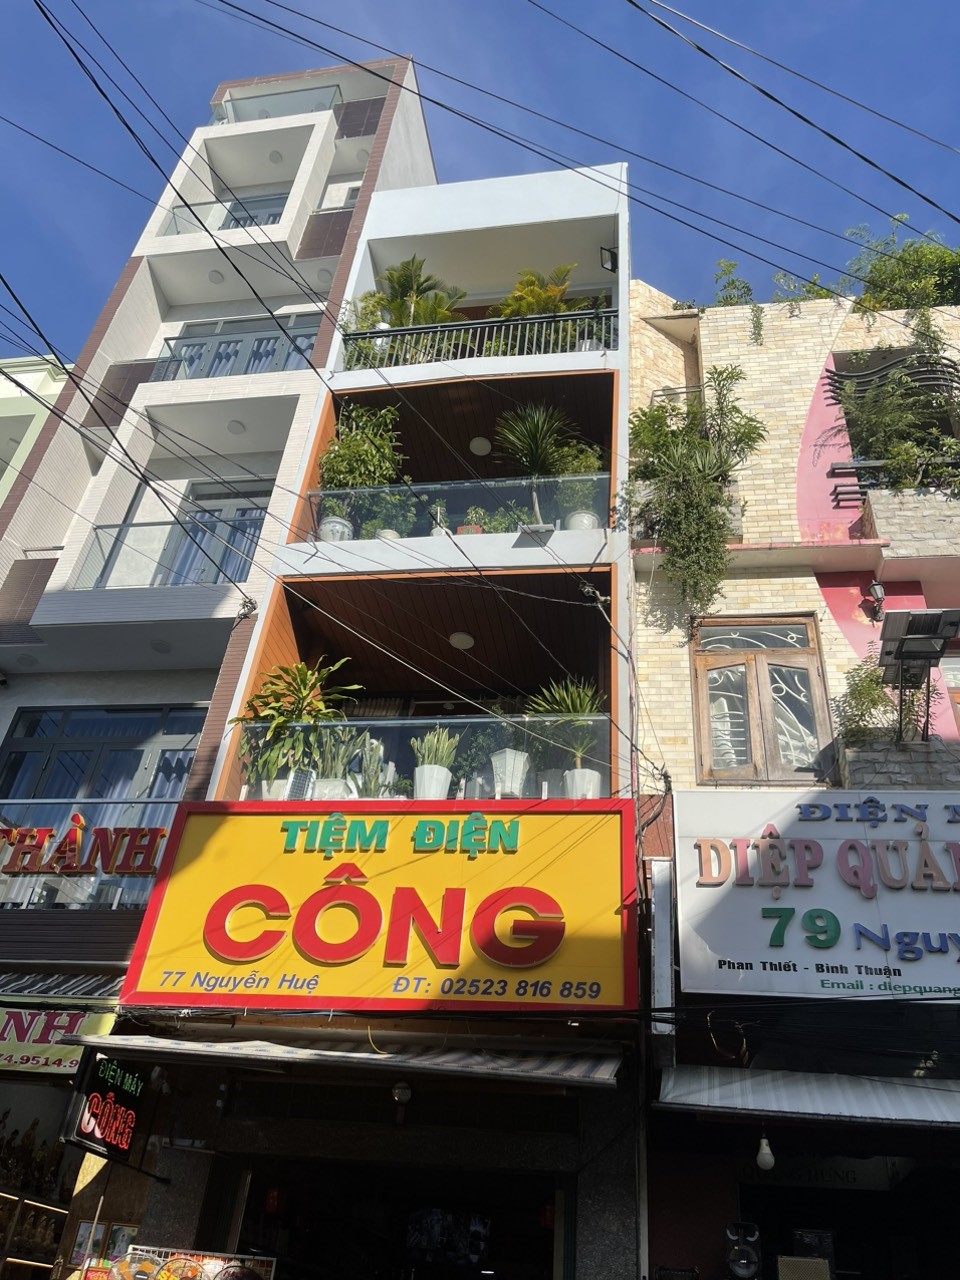 Gia đình chuyển về SG nên cần bán lại nhà số 77 Nguyễn Huệ, Đức Nghĩa, Phan Thiết, Bình Thuận - Ảnh chính